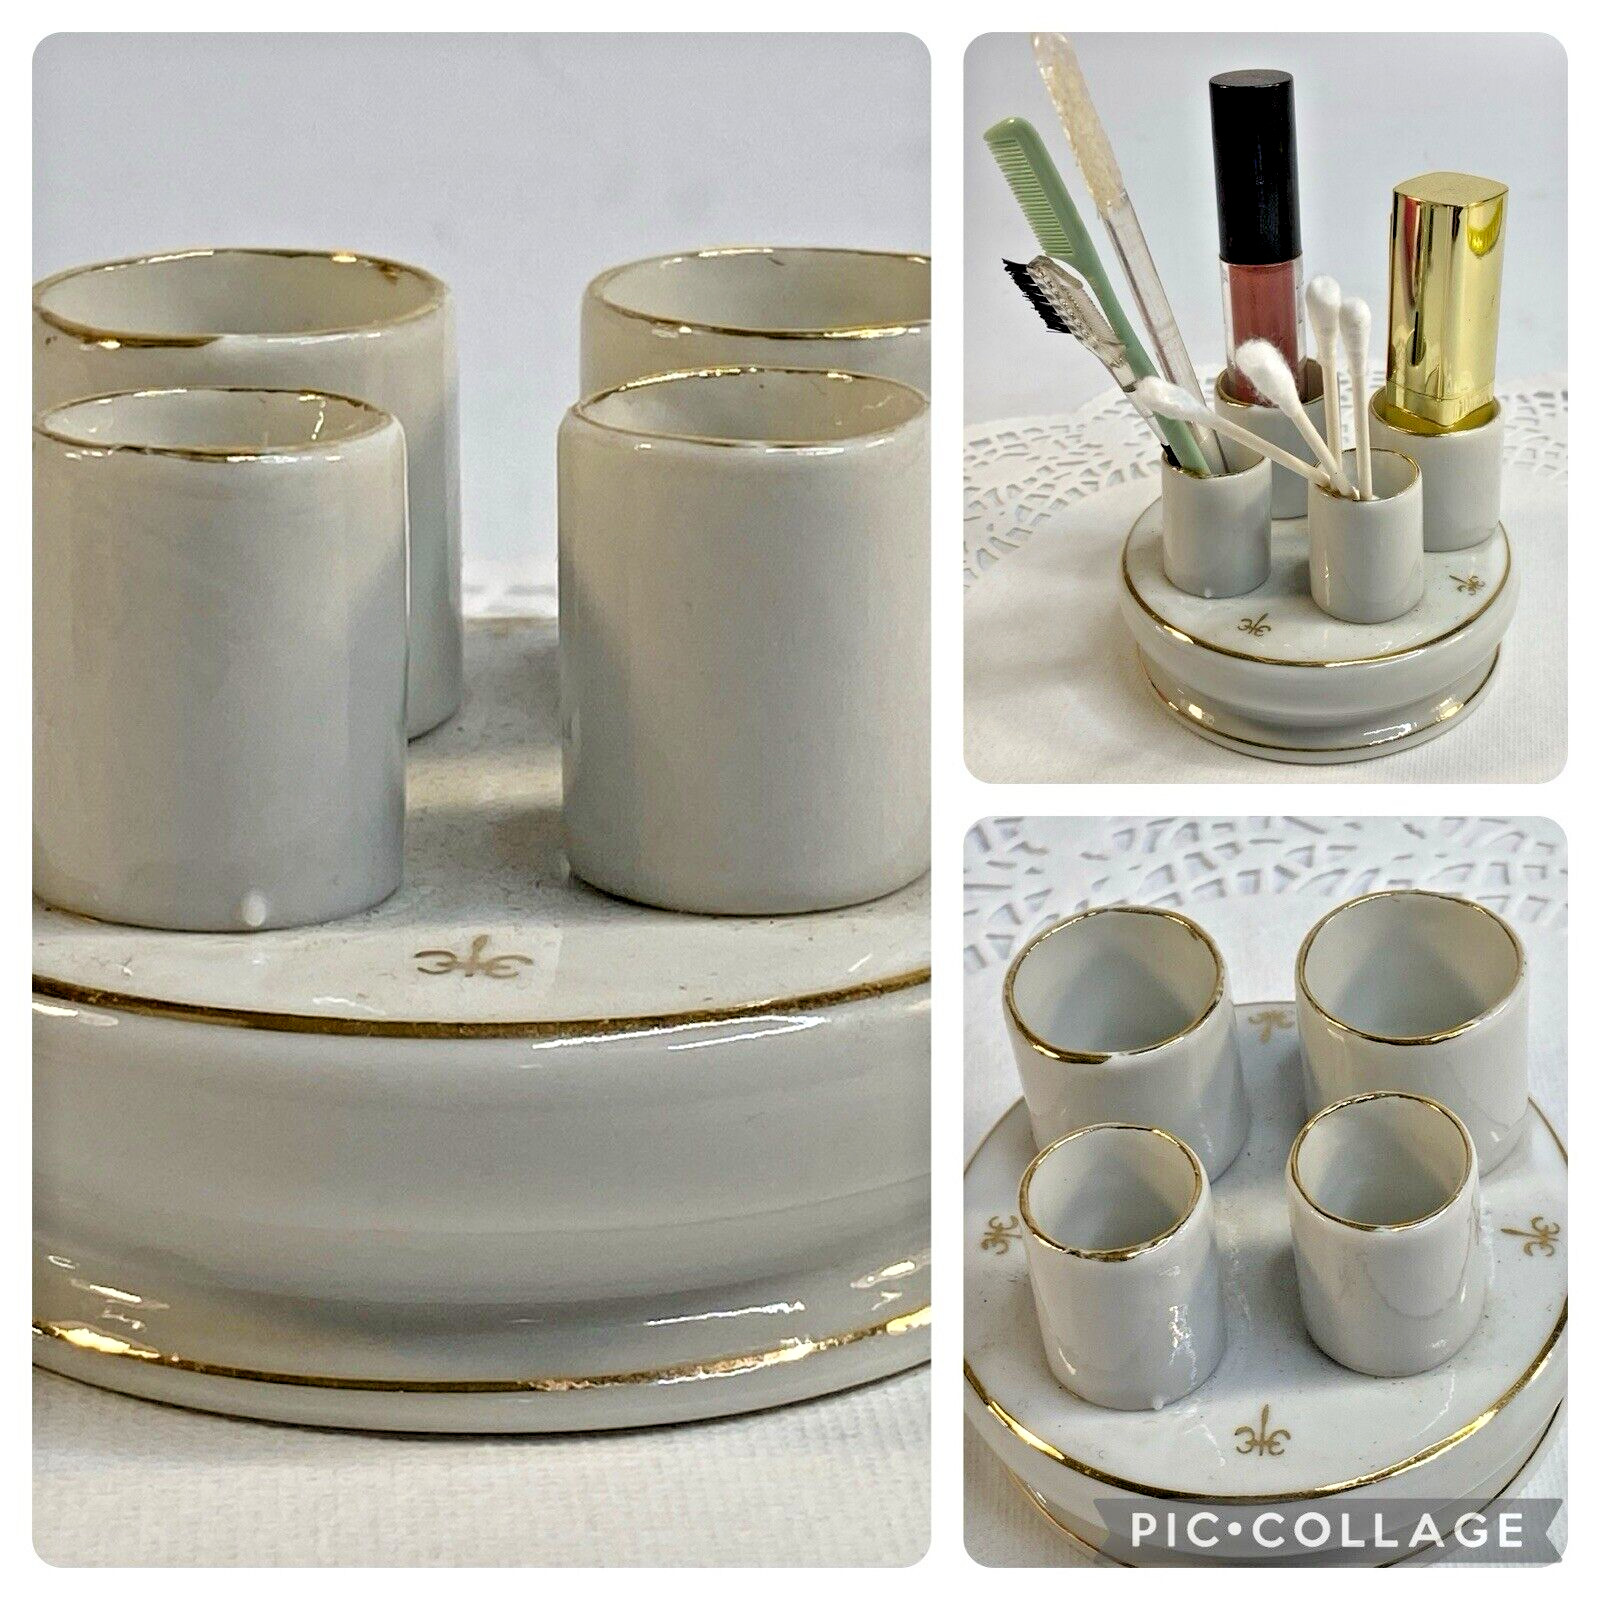 Vintage Nasco Lipstick Holder Valet Fleur deLis Design Porcelain Gold Trim Japan